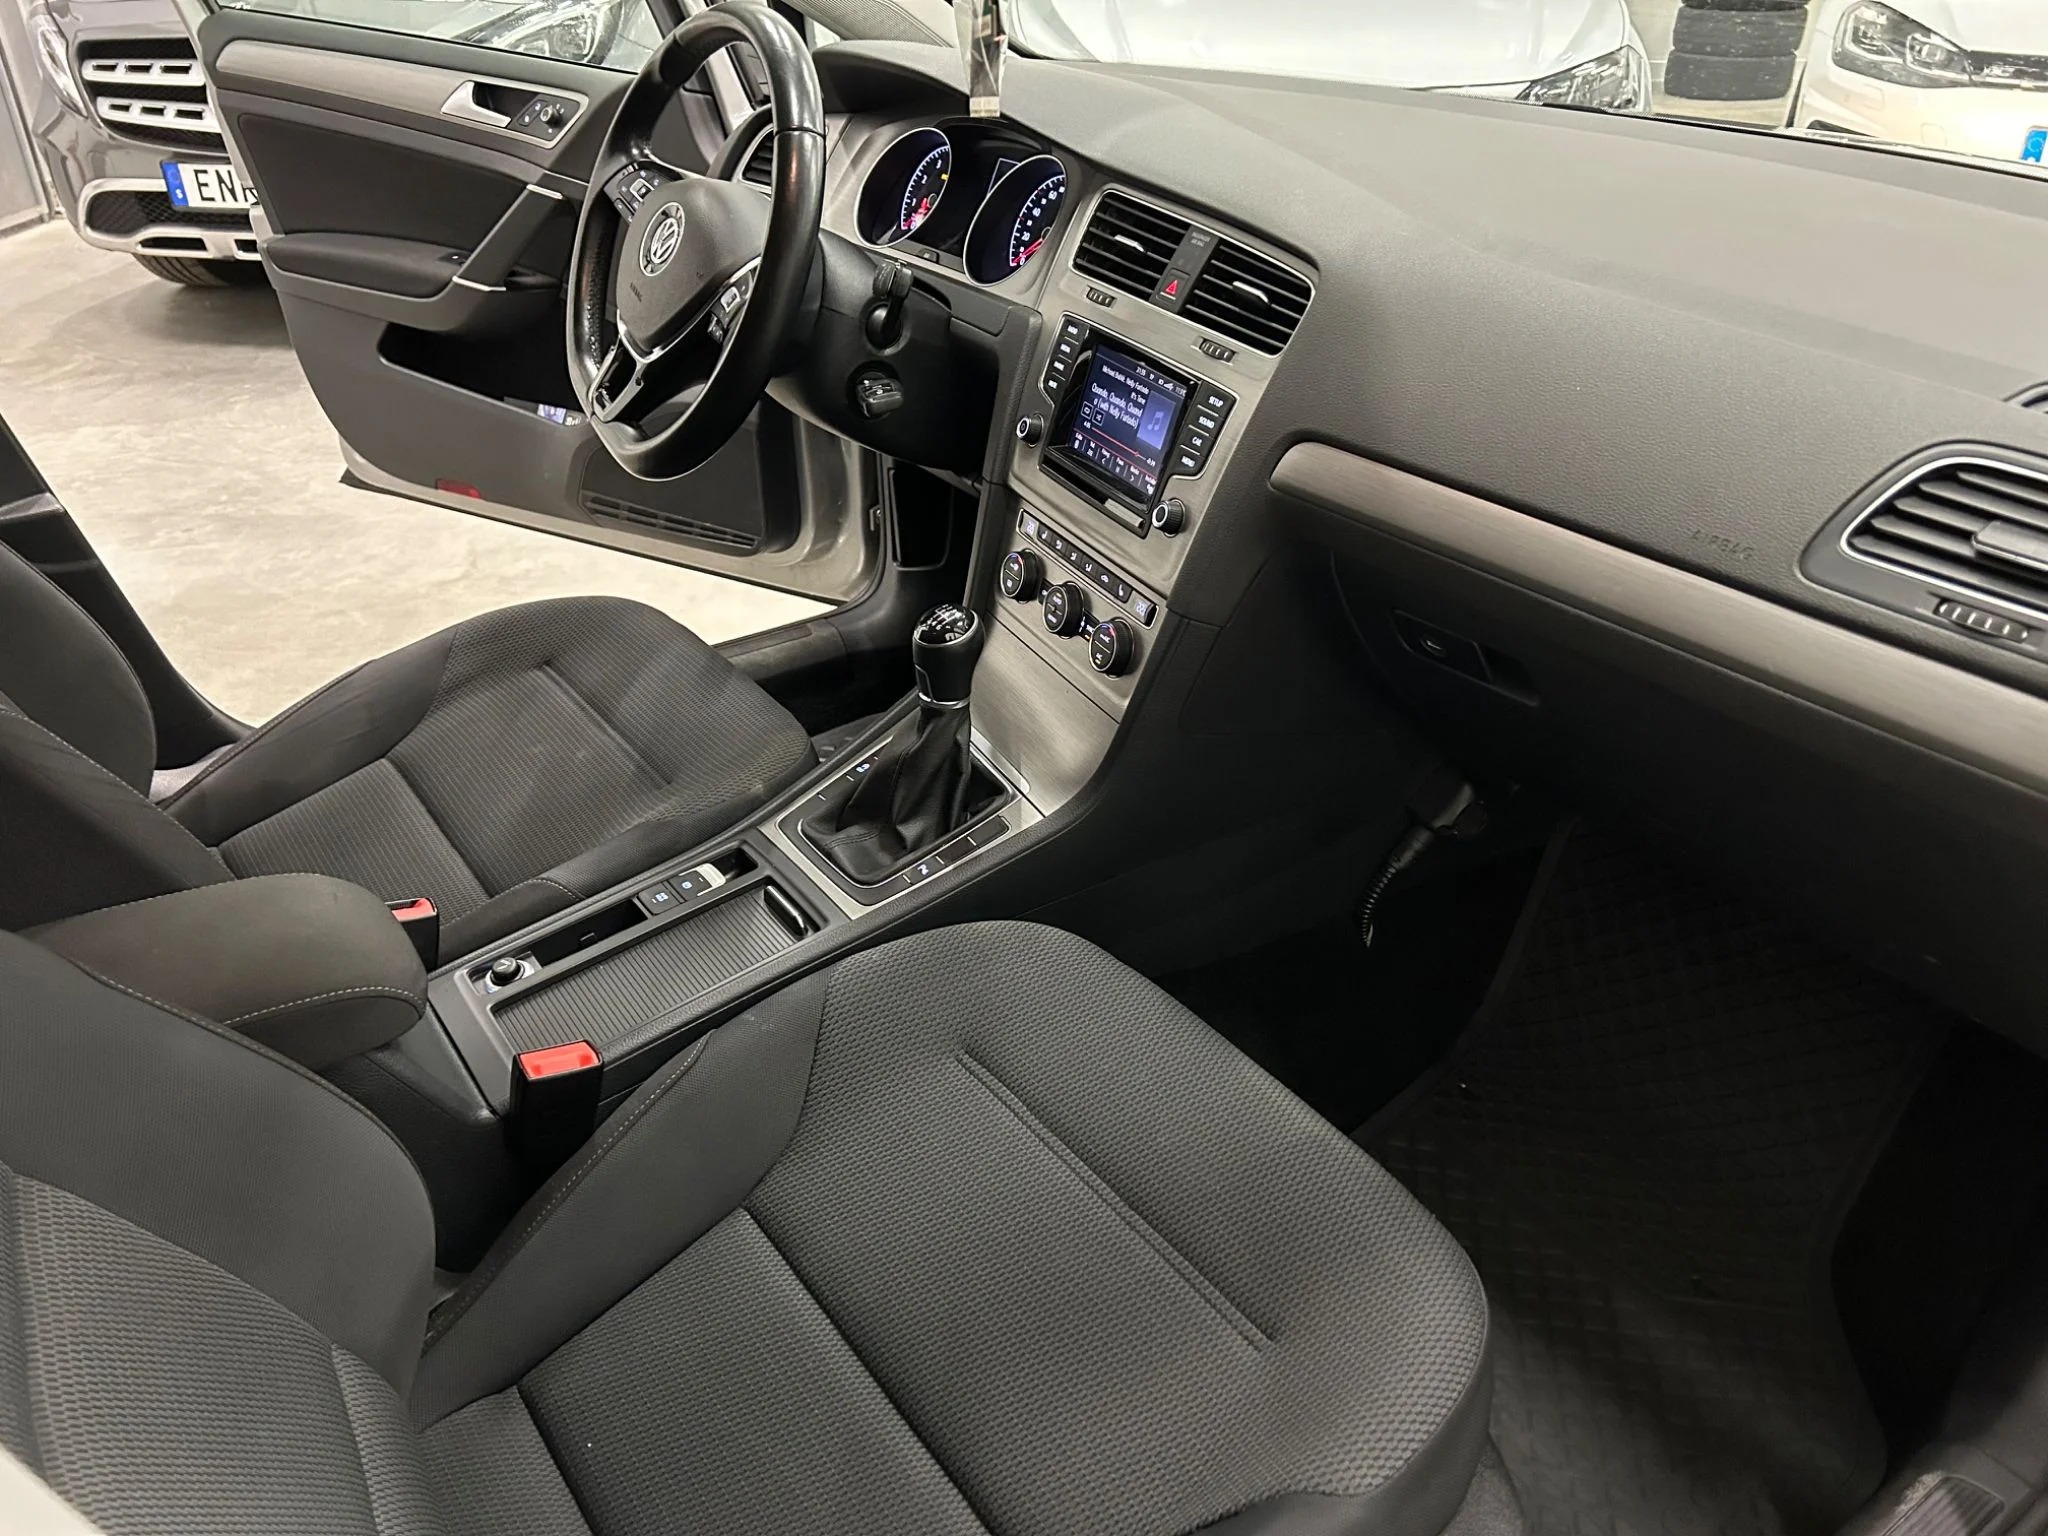 Volkswagen Golf 5-dörrar 1.4 TSI BMT MultiFuel Manuell, 125hk, 2015